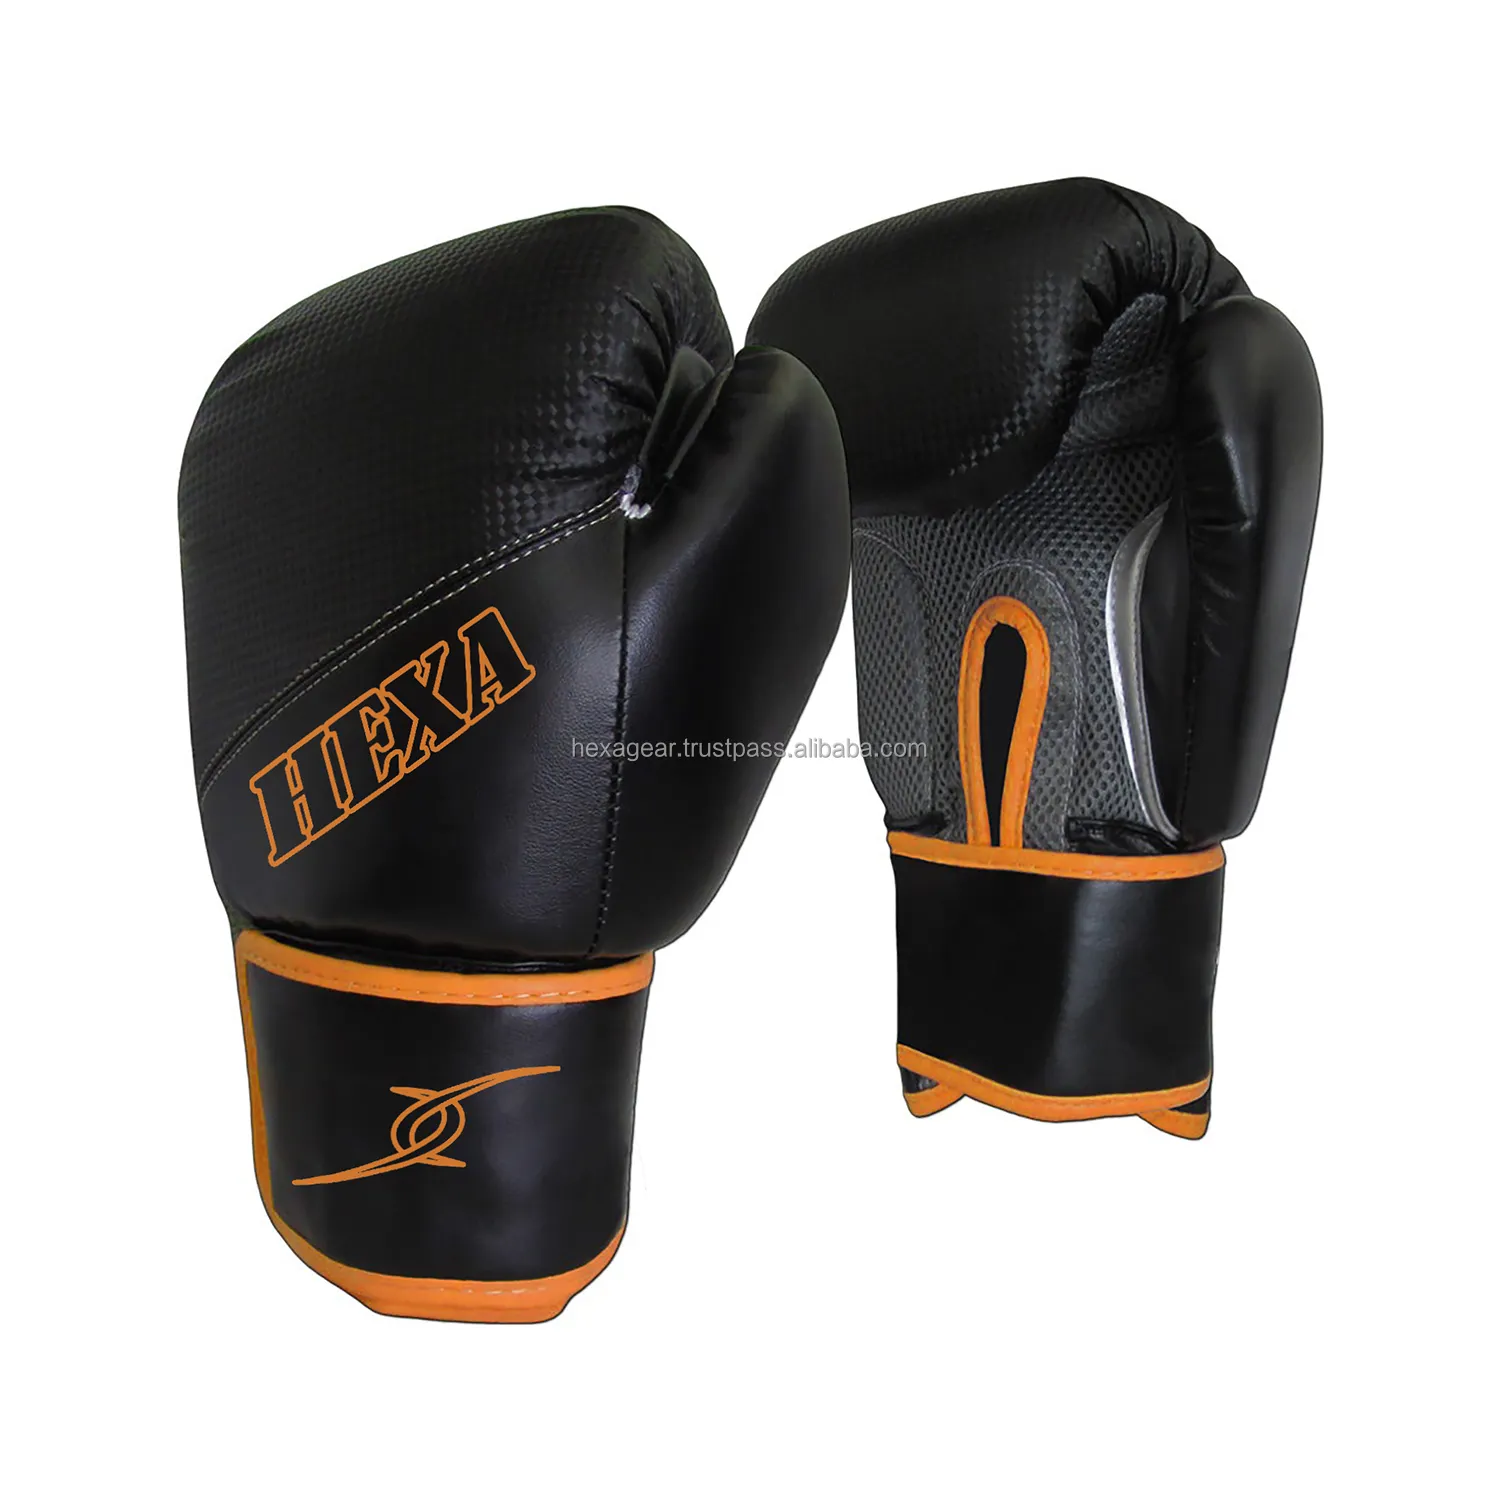 Hexa pro gear gants de boxe wining personnalisés avec matériau néoprène gants de boxe avec logo personnalisé